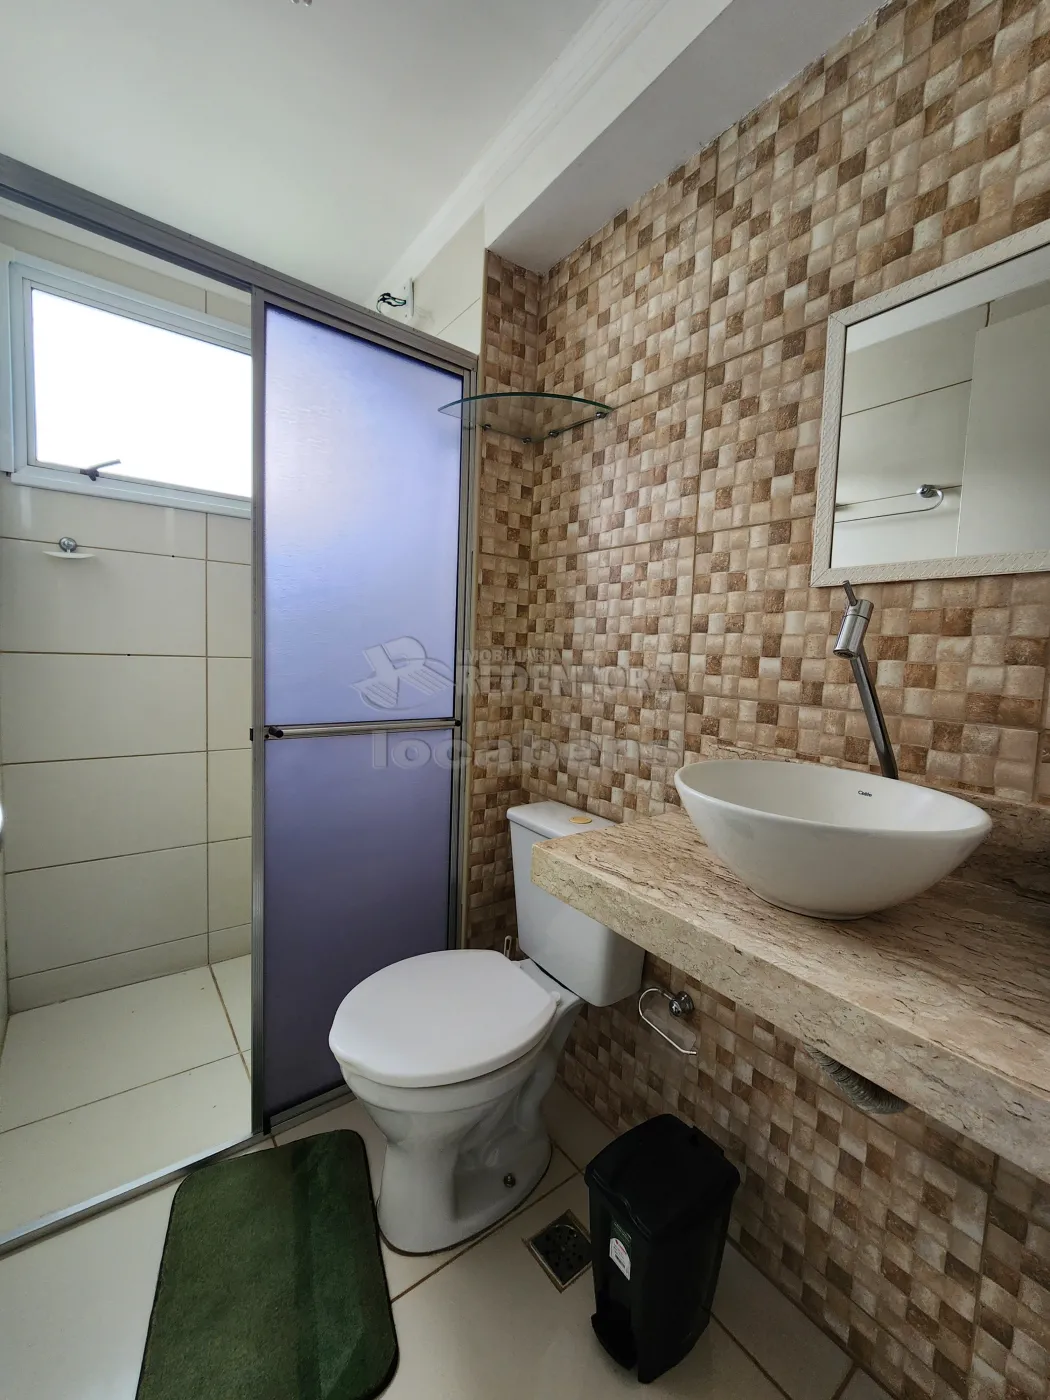 Alugar Apartamento / Padrão em São José do Rio Preto apenas R$ 1.400,00 - Foto 6